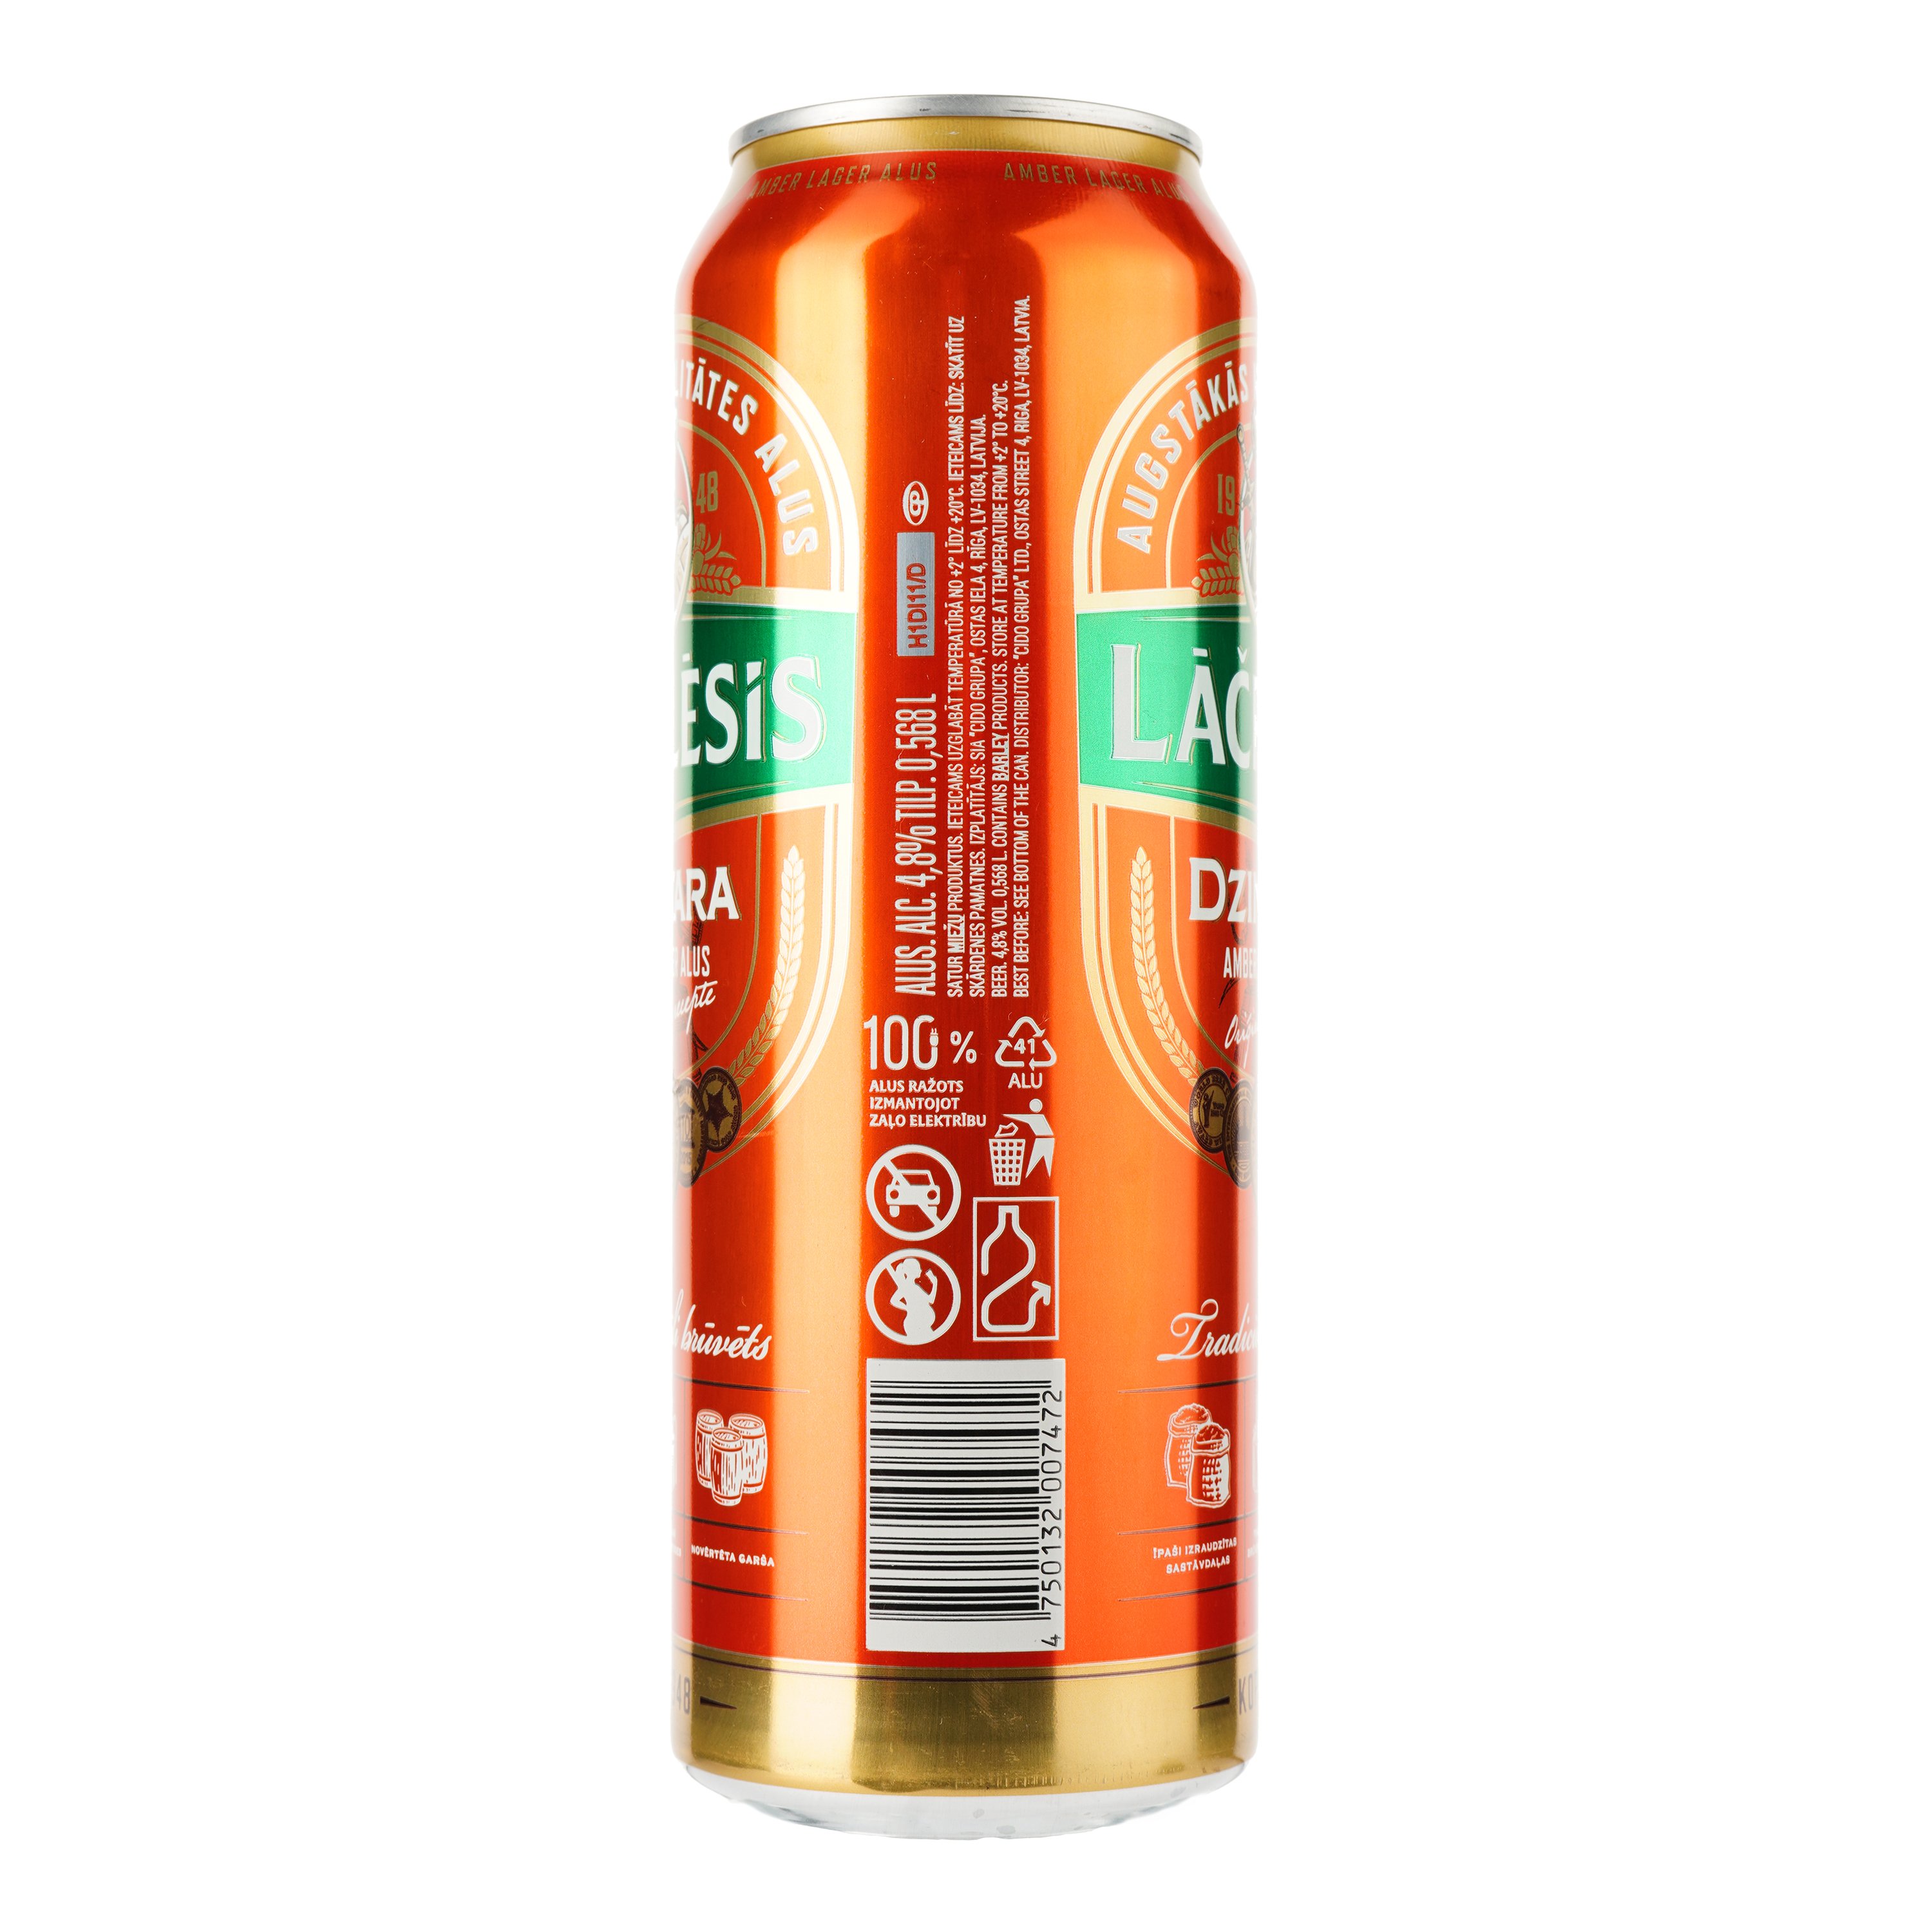 Пиво Lacplesis Dzintara світле, 4.8%, з/б, 0.568 л - фото 2